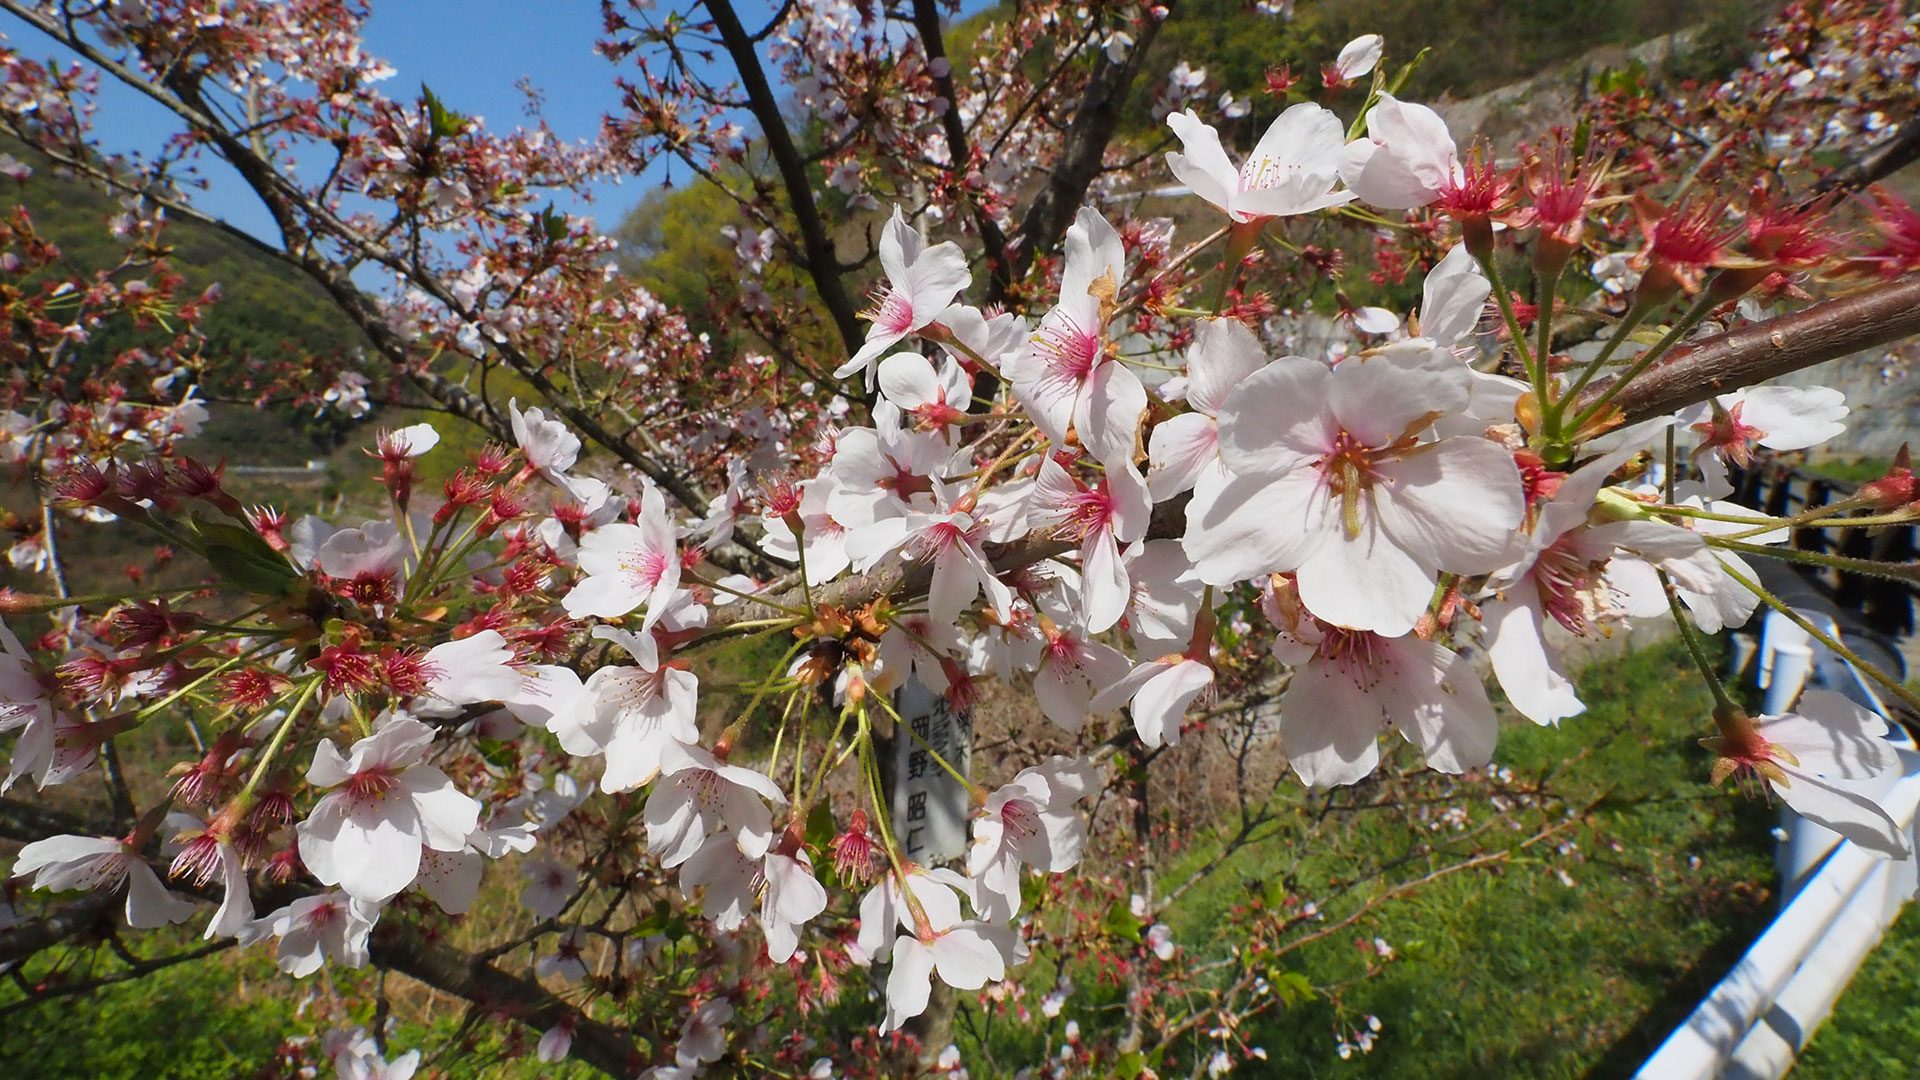 アキヒトとは因島出身のポルノグラフィティのボーカル、岡野明仁さん。岡野さんもこの植樹活動をサポートして桜の木のオーナに名を連ねているのです